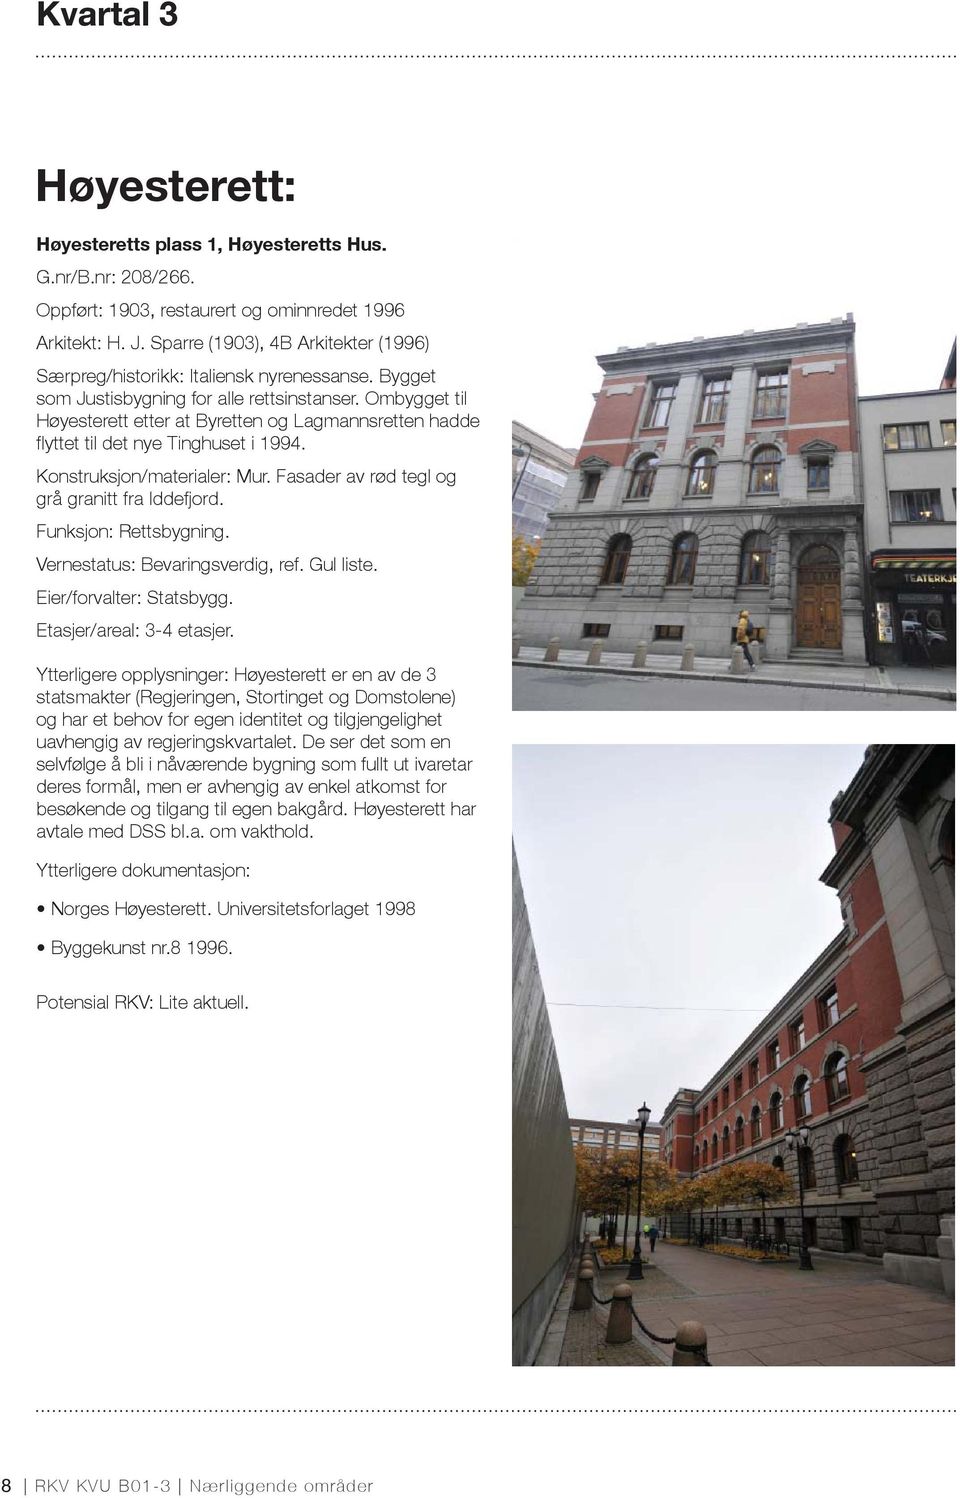 Ombygget til Høyesterett etter at Byretten og Lagmannsretten hadde fl yttet til det nye Tinghuset i 1994. Konstruksjon/materialer: Mur. Fasader av rød tegl og grå granitt fra Iddefjord.